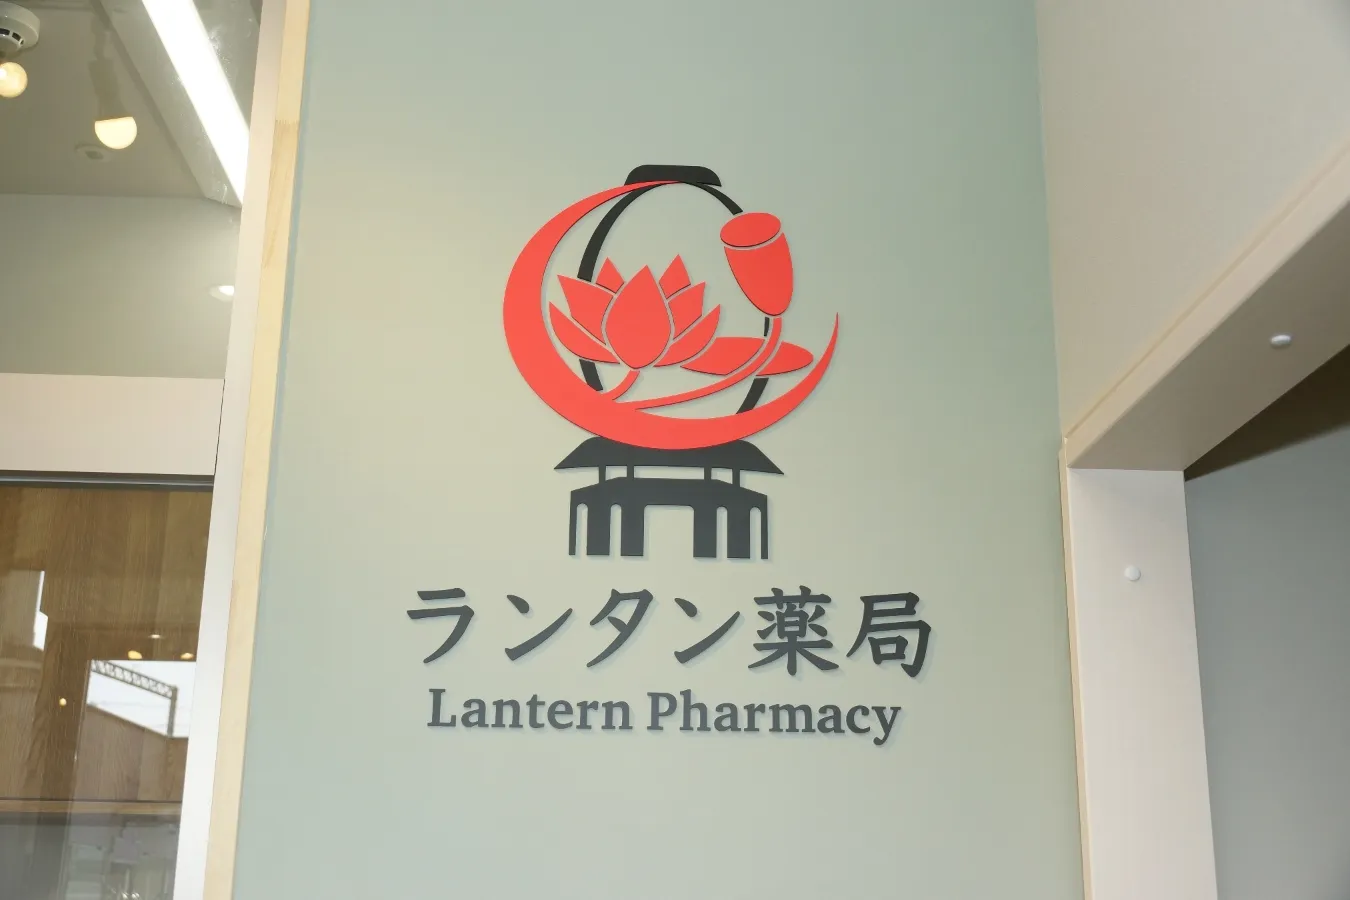 ランタン薬局の受付に設置された看板ロゴ